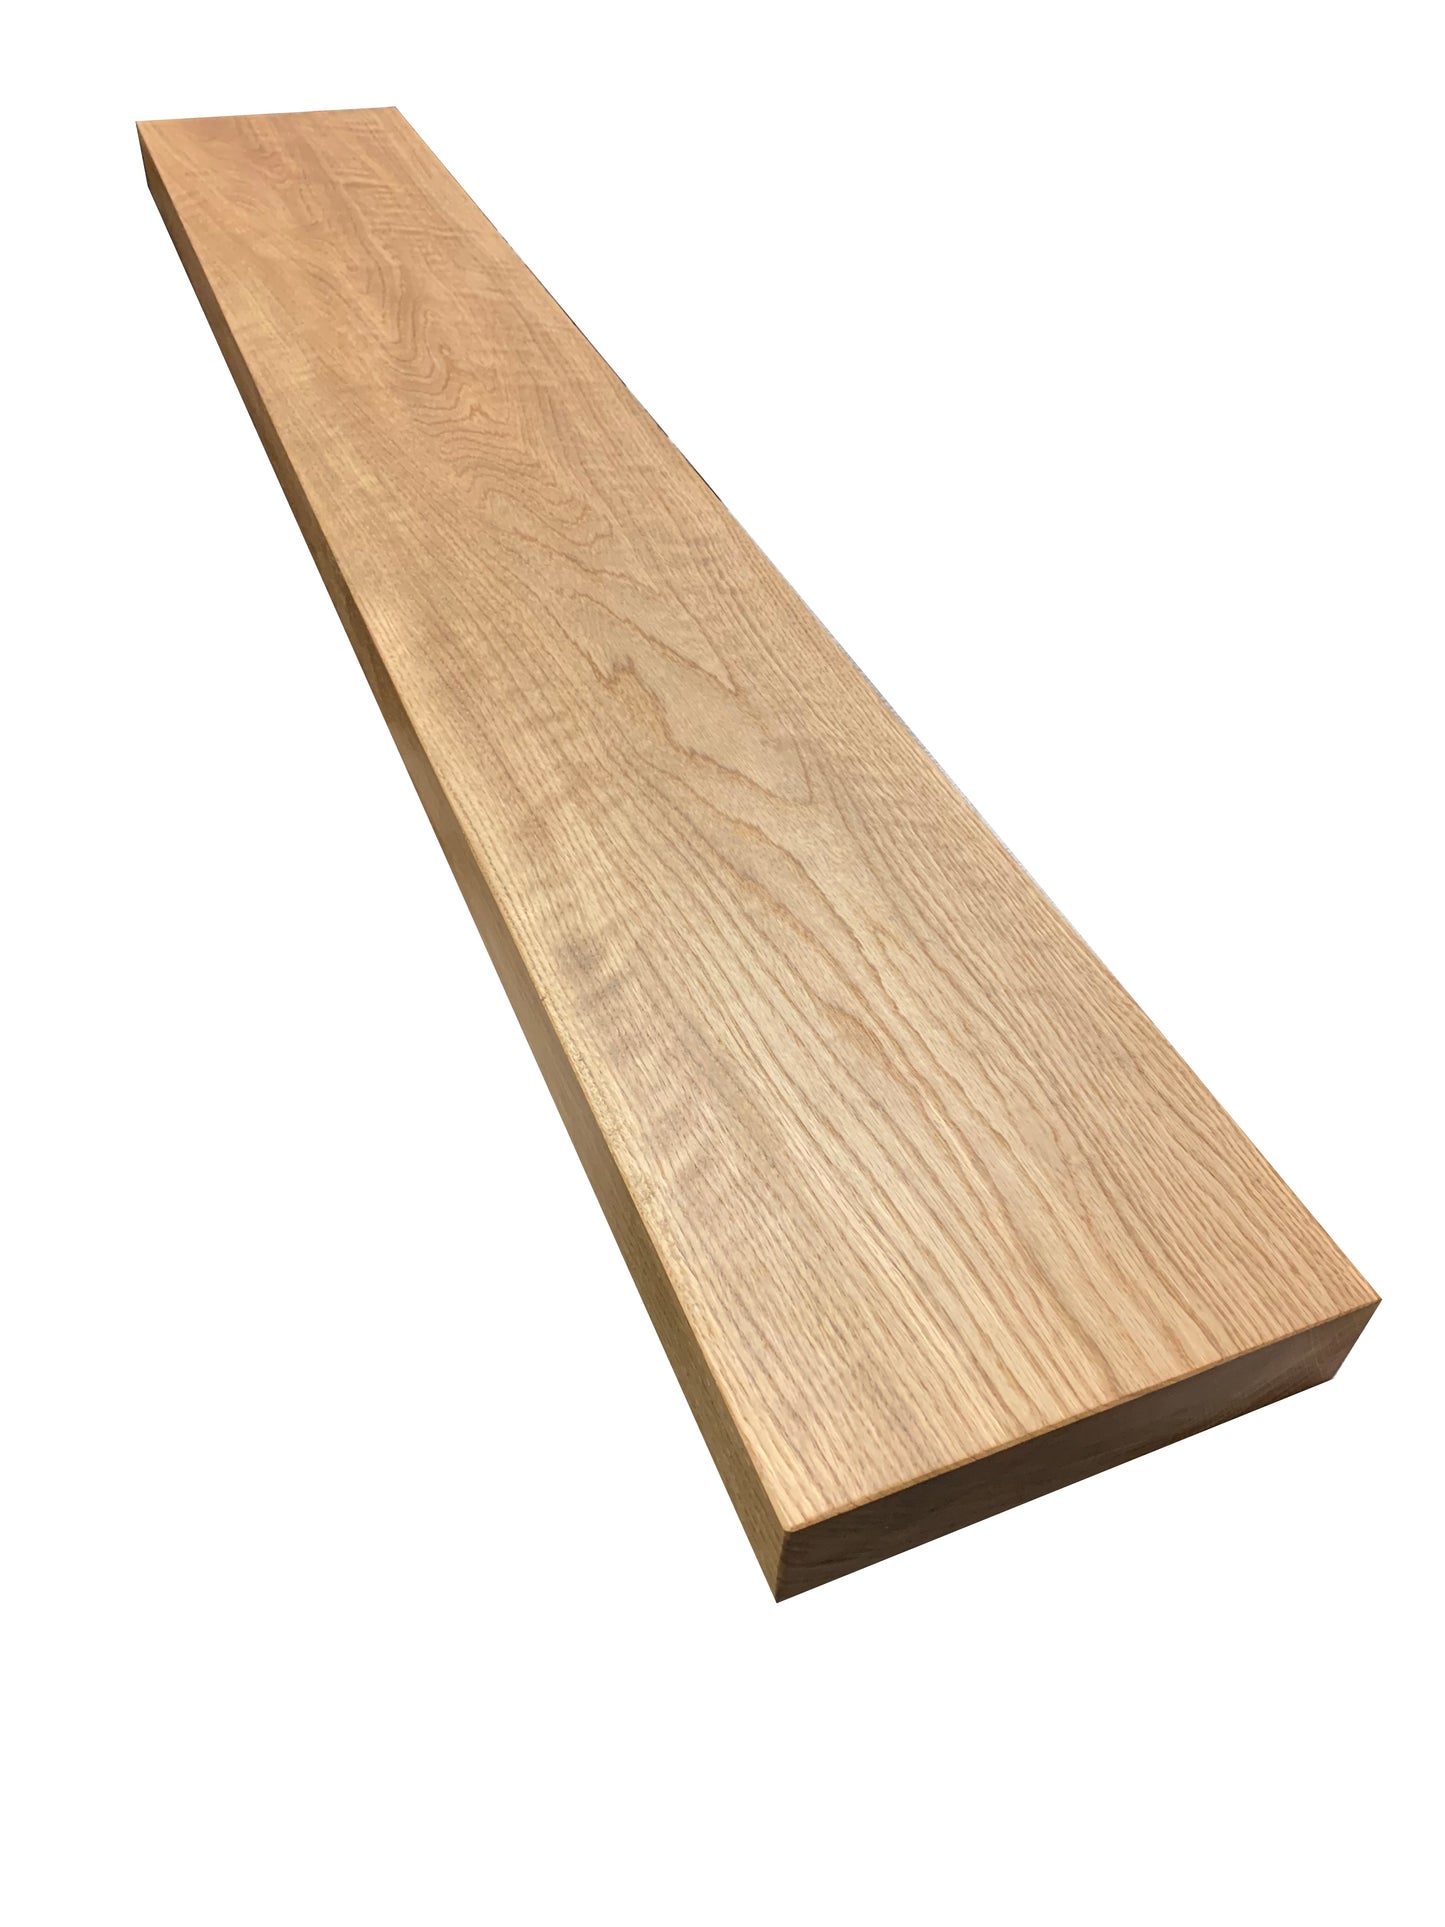 White Oak Full Wood Floating Shelf - Pure Finish